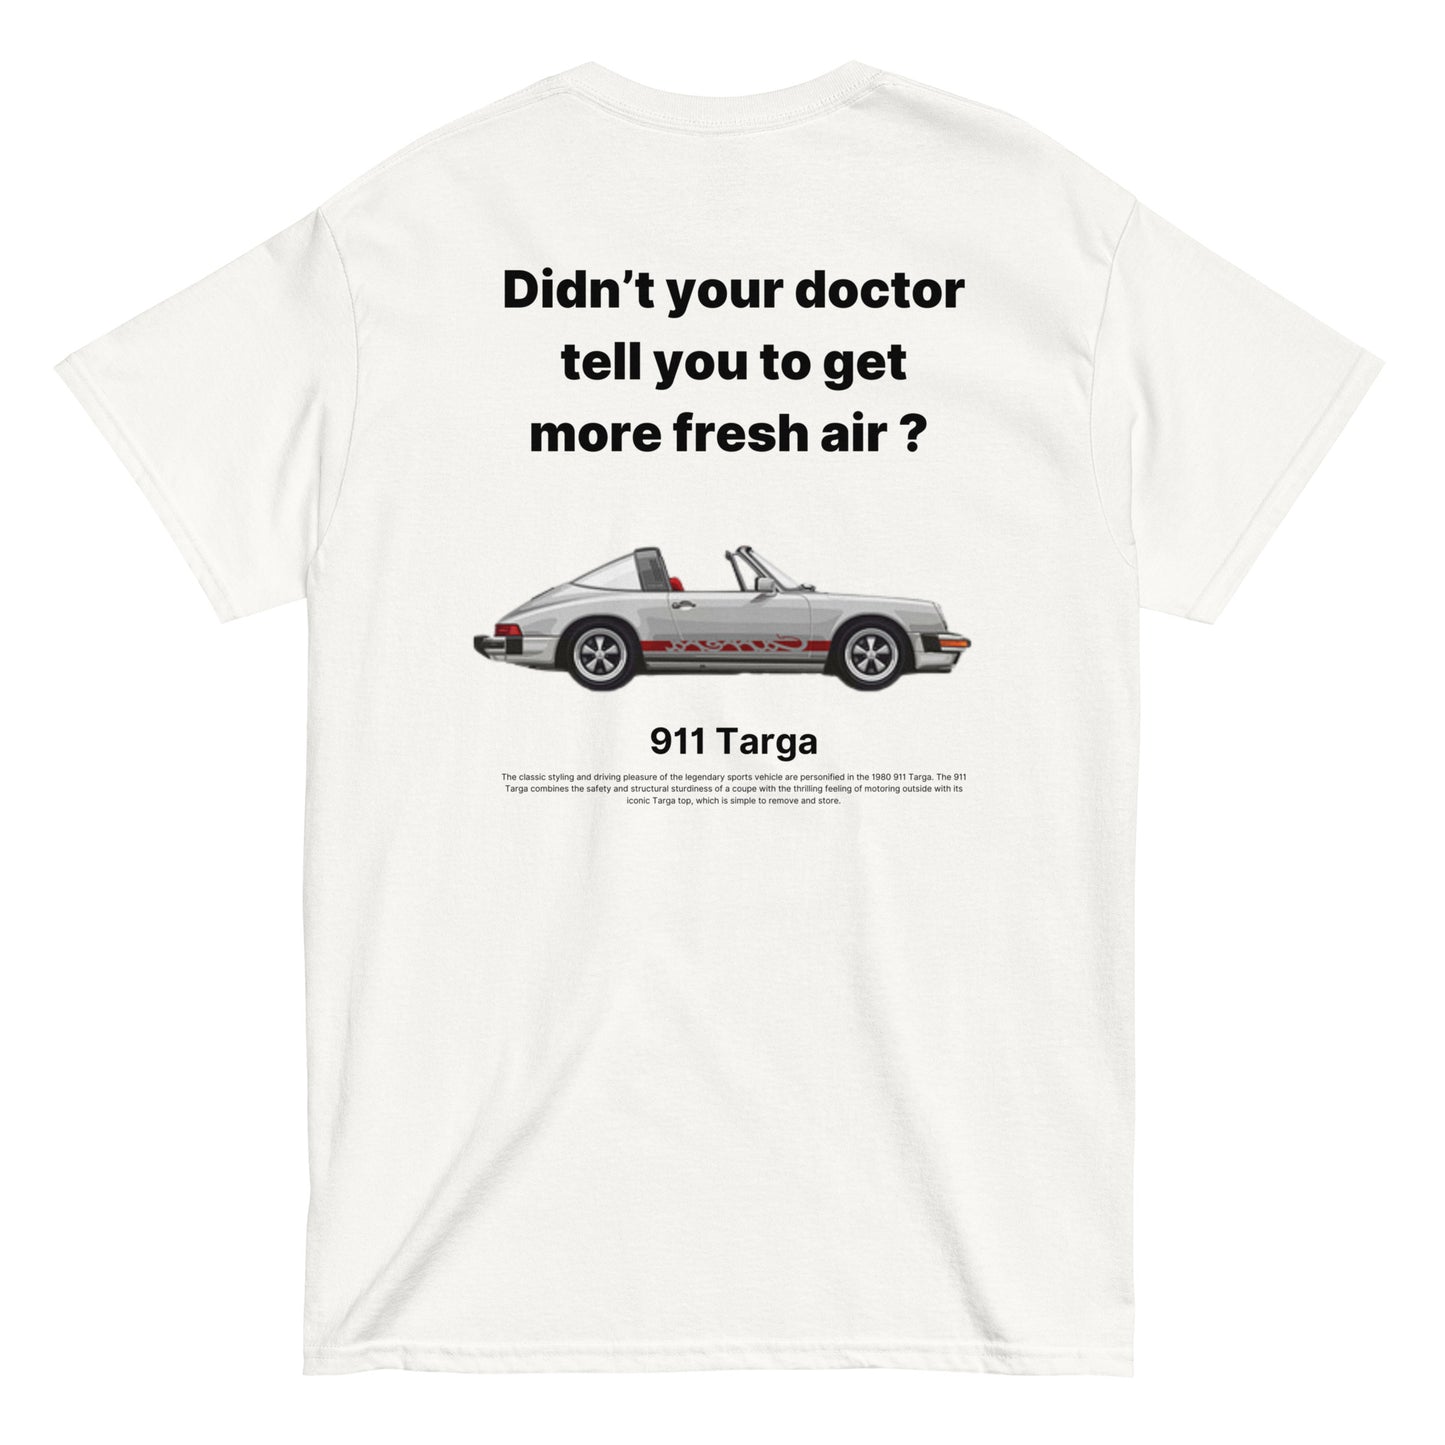 1980 911 Targa T-shirt